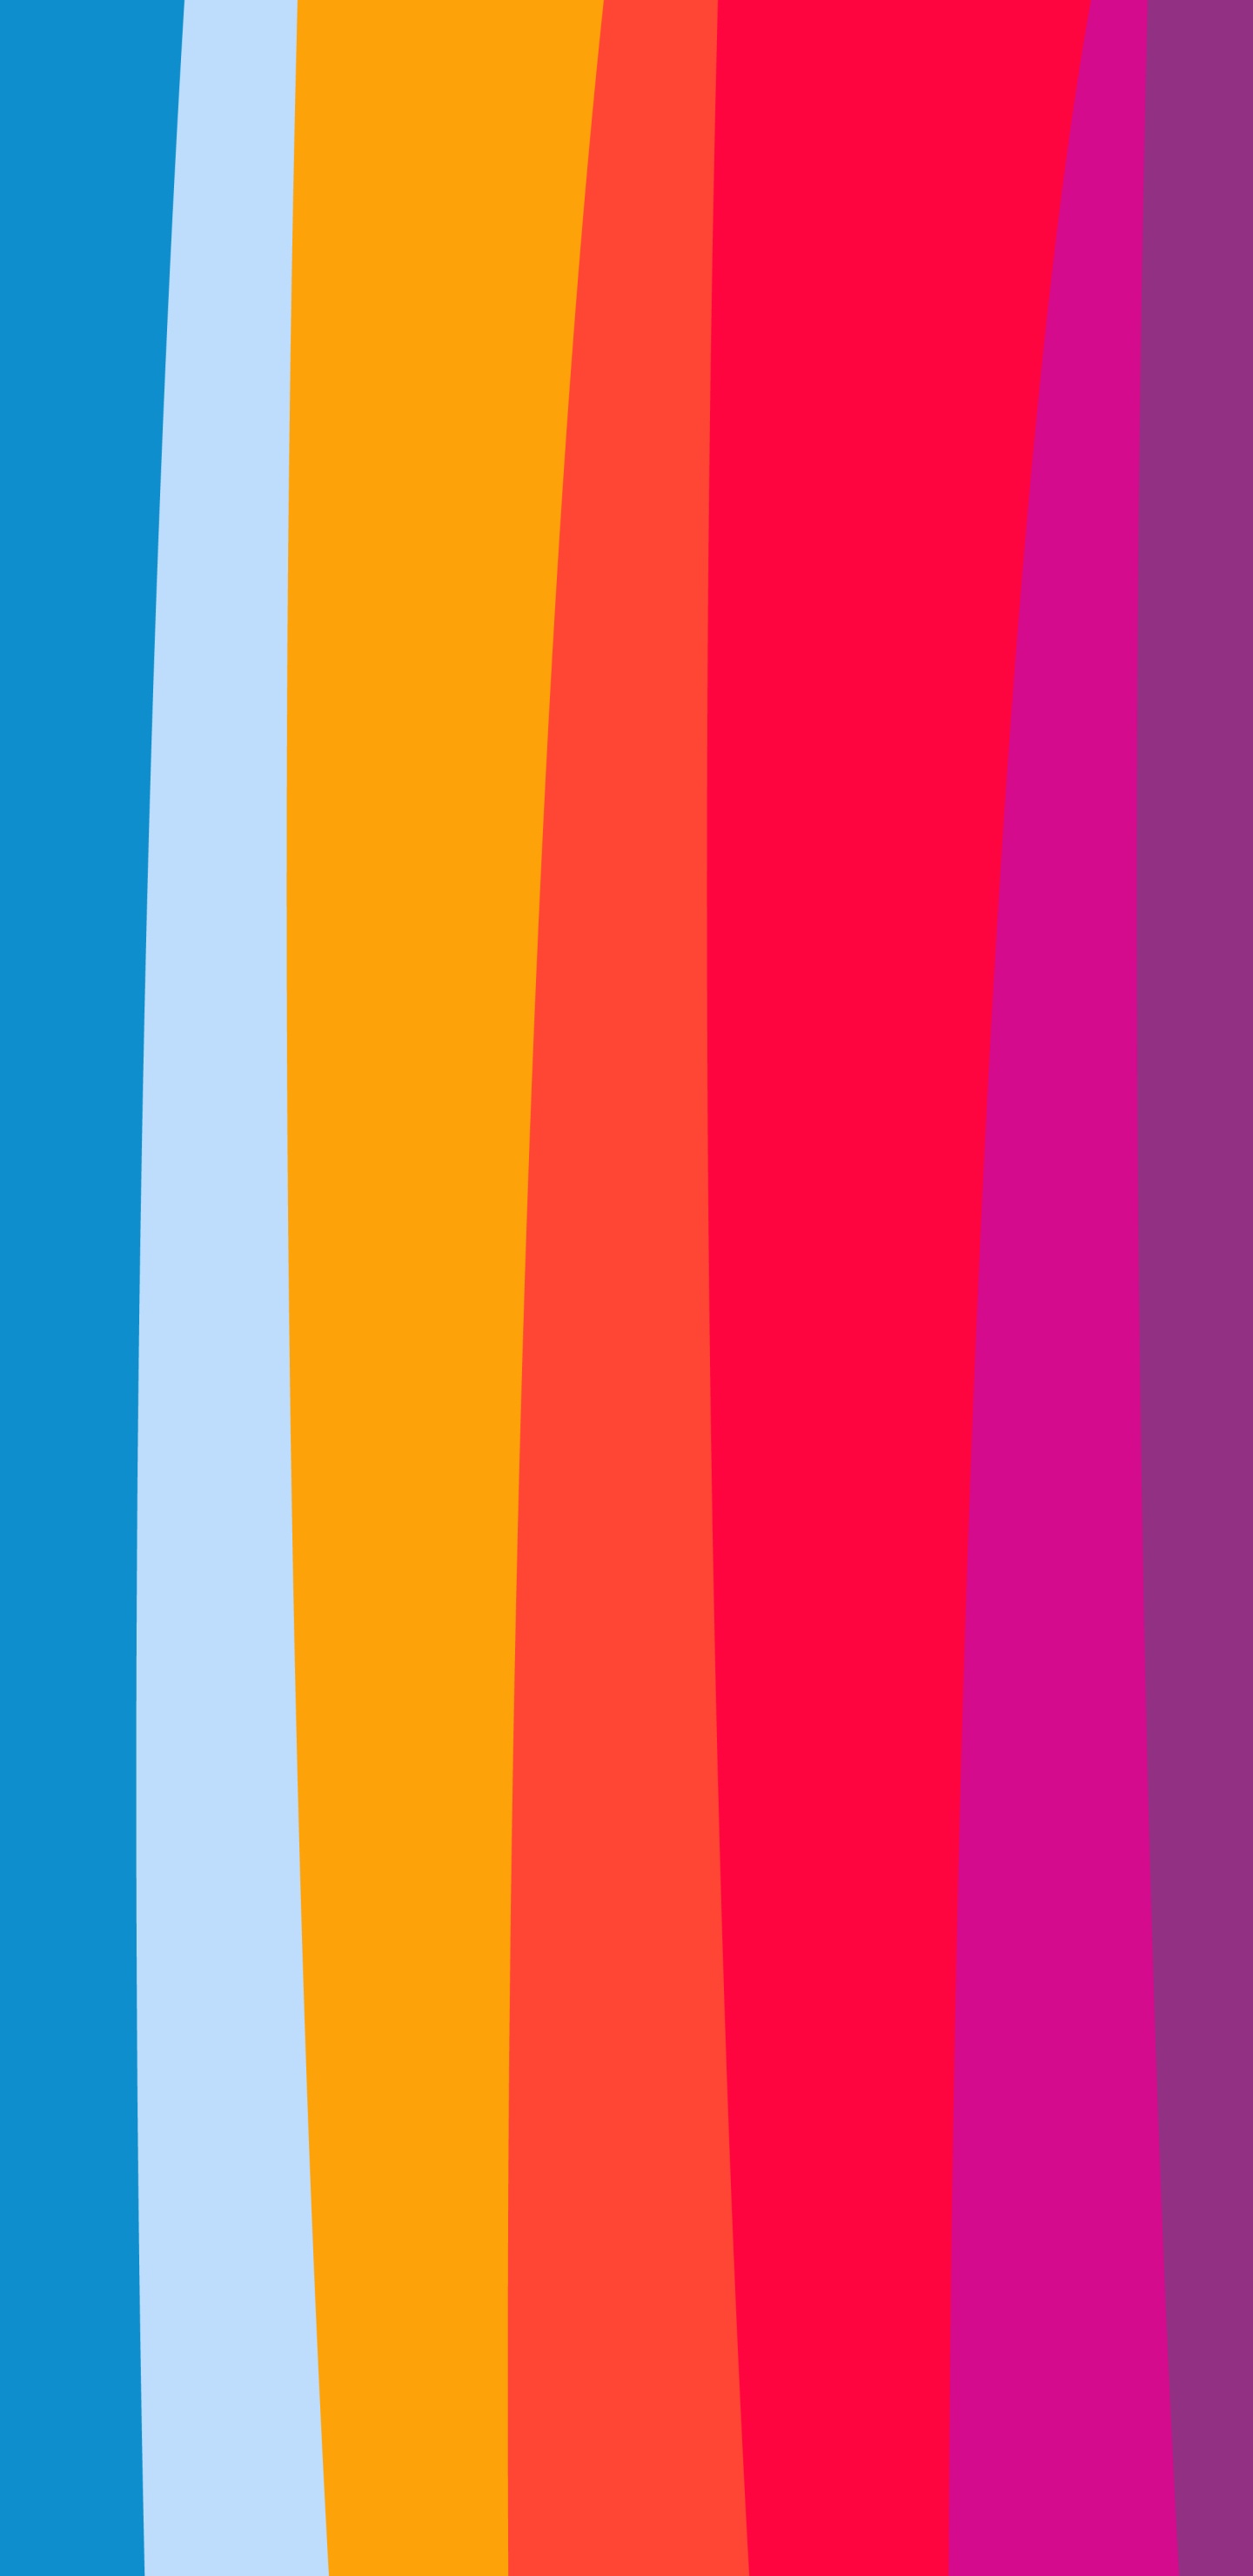 Orange, Äpfeln, Farbigkeit, Blau, Purpur. Wallpaper in 1440x2960 Resolution